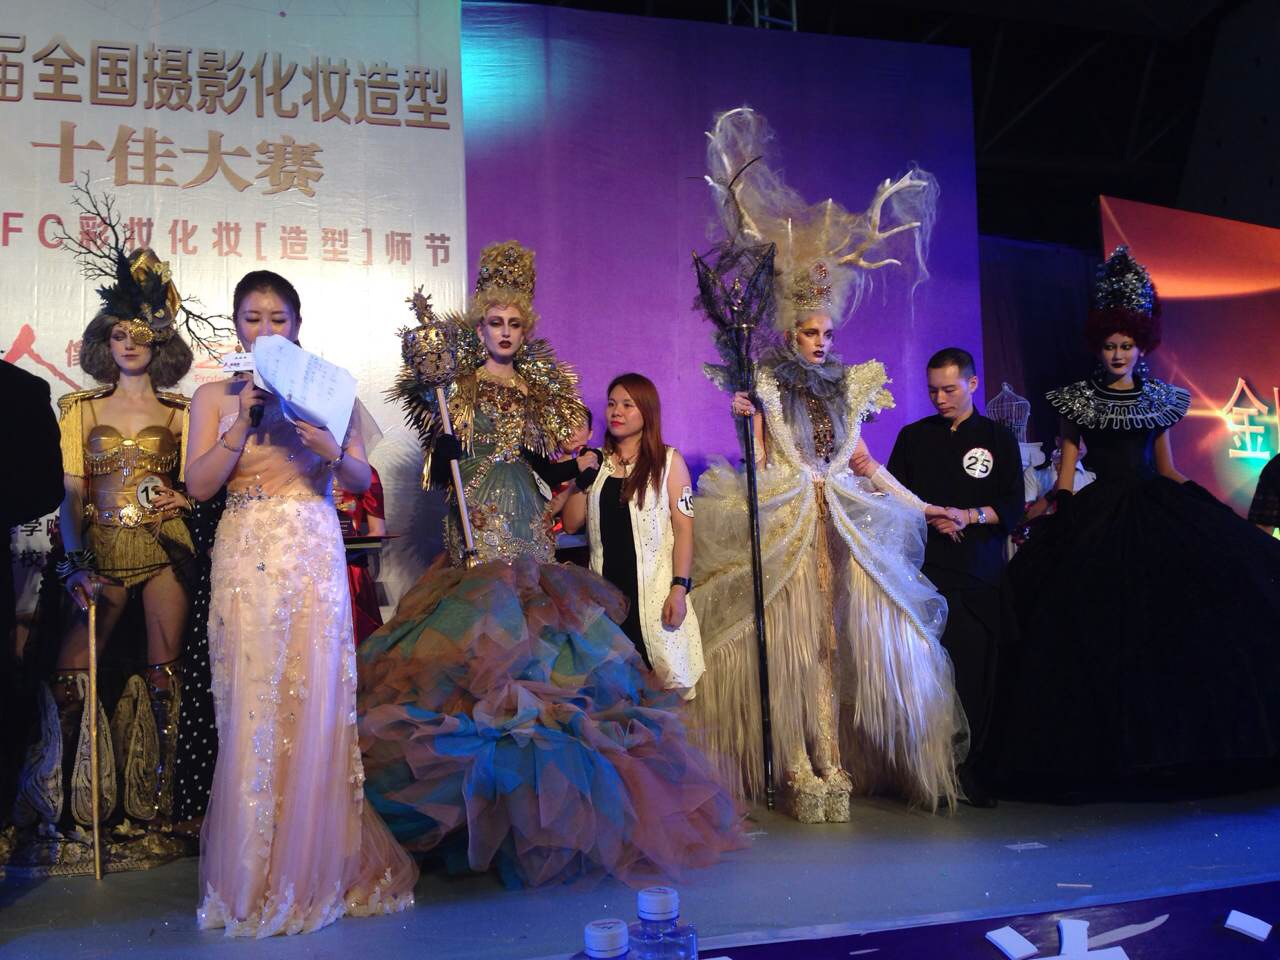 刘勇在第九届全国发型化妆大赛晚宴化妆组亚军 - 学生获 - 学生获奖 - 蒙妮坦